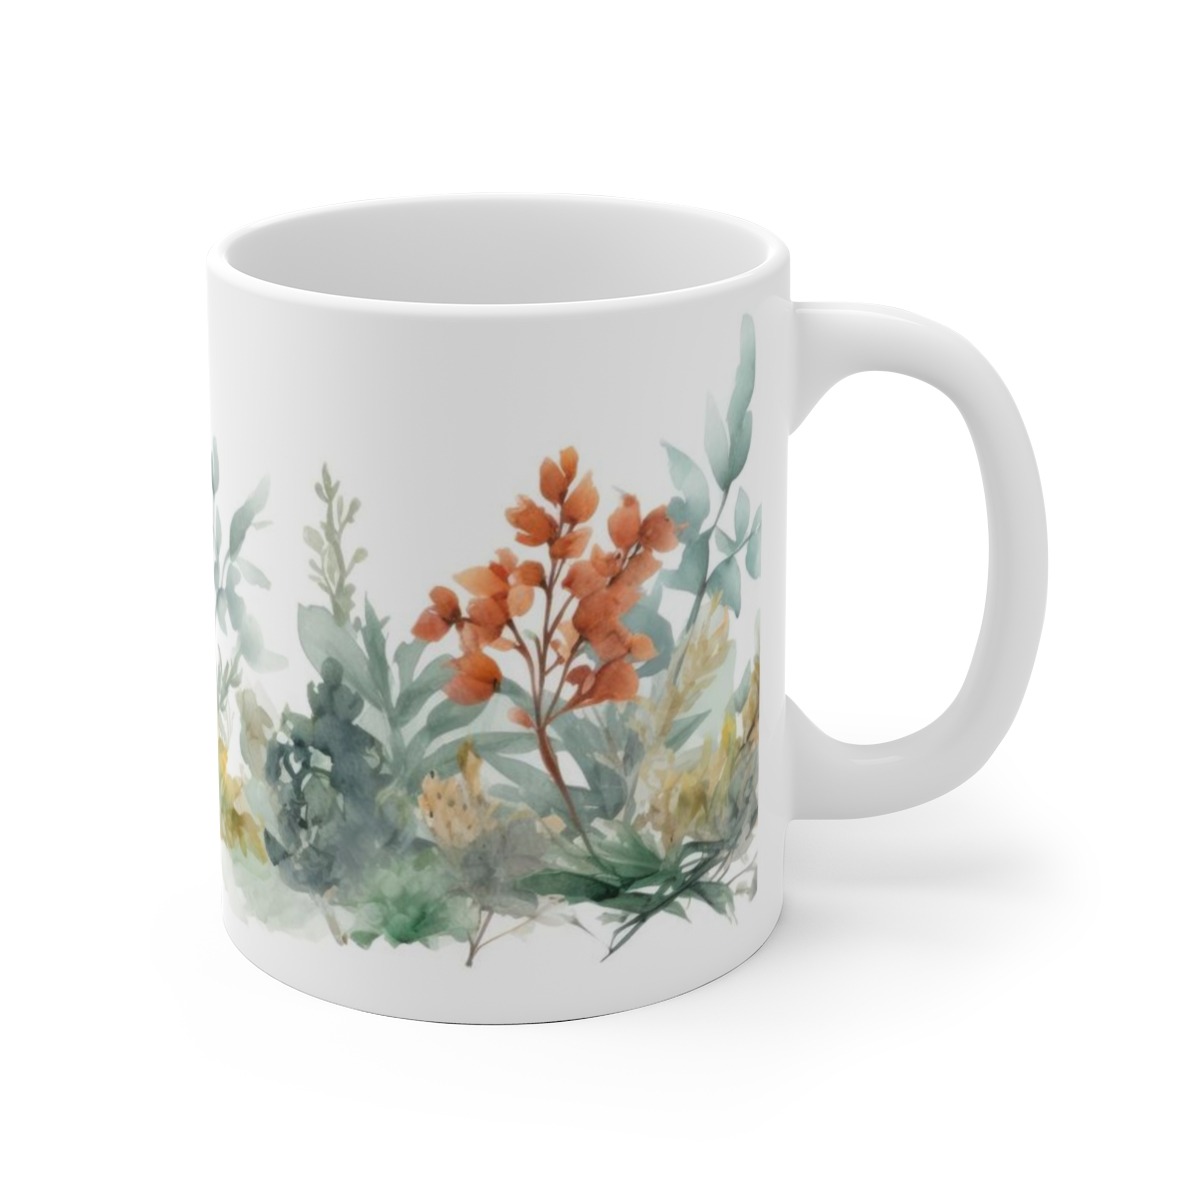 Bedruckte Tasse mit Aquarell-Pflanzenmotiven